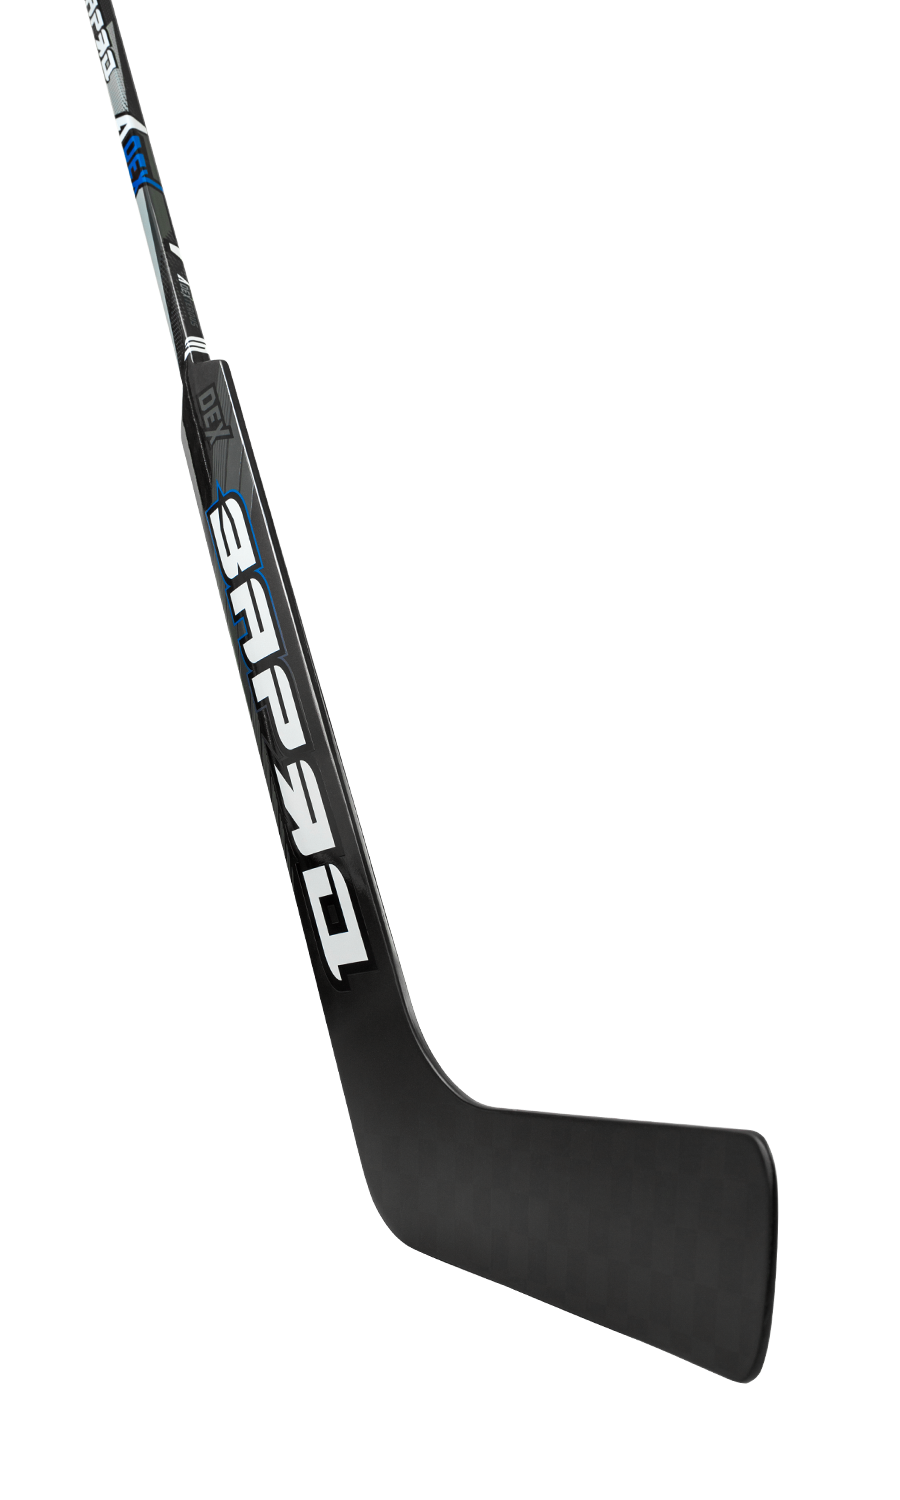 ZaryaD A Dex Ice hockey stick